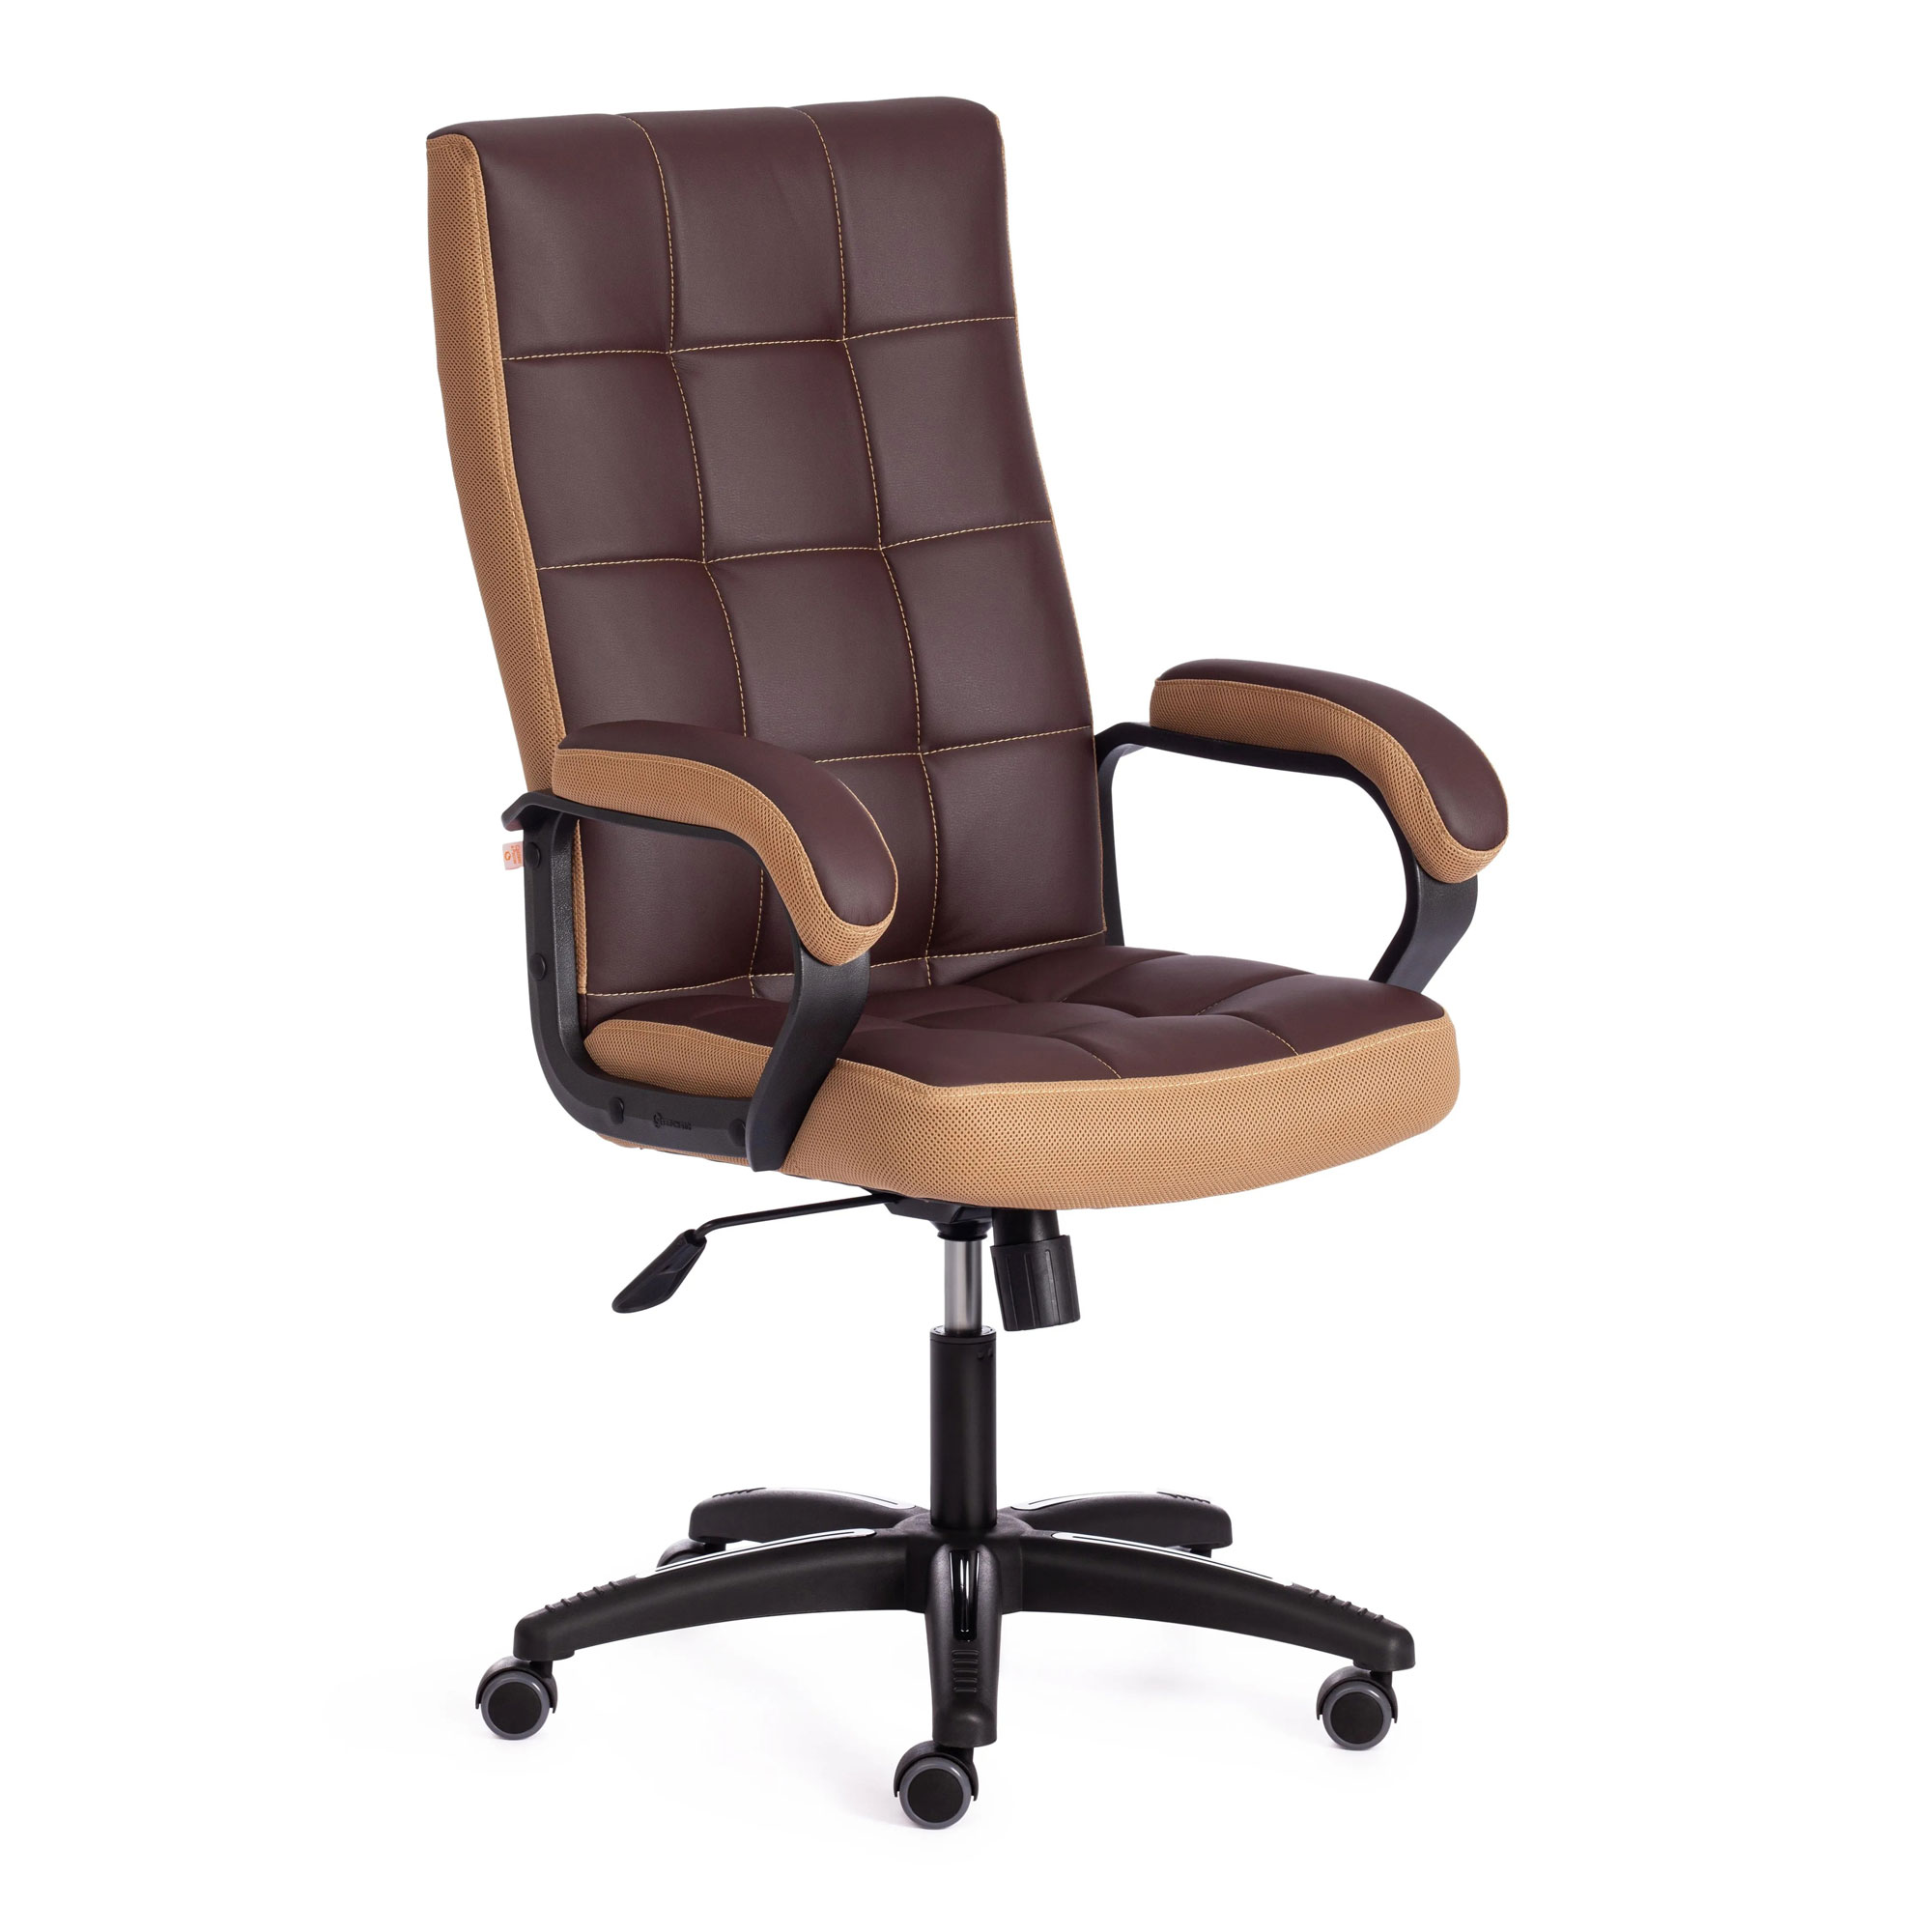 Кресло компьютерное TC искусственная кожа коричневое с бронзовым 61х47х126 см кресло компьютерное tc driver искусственная кожа чёрное 55х49х126 см